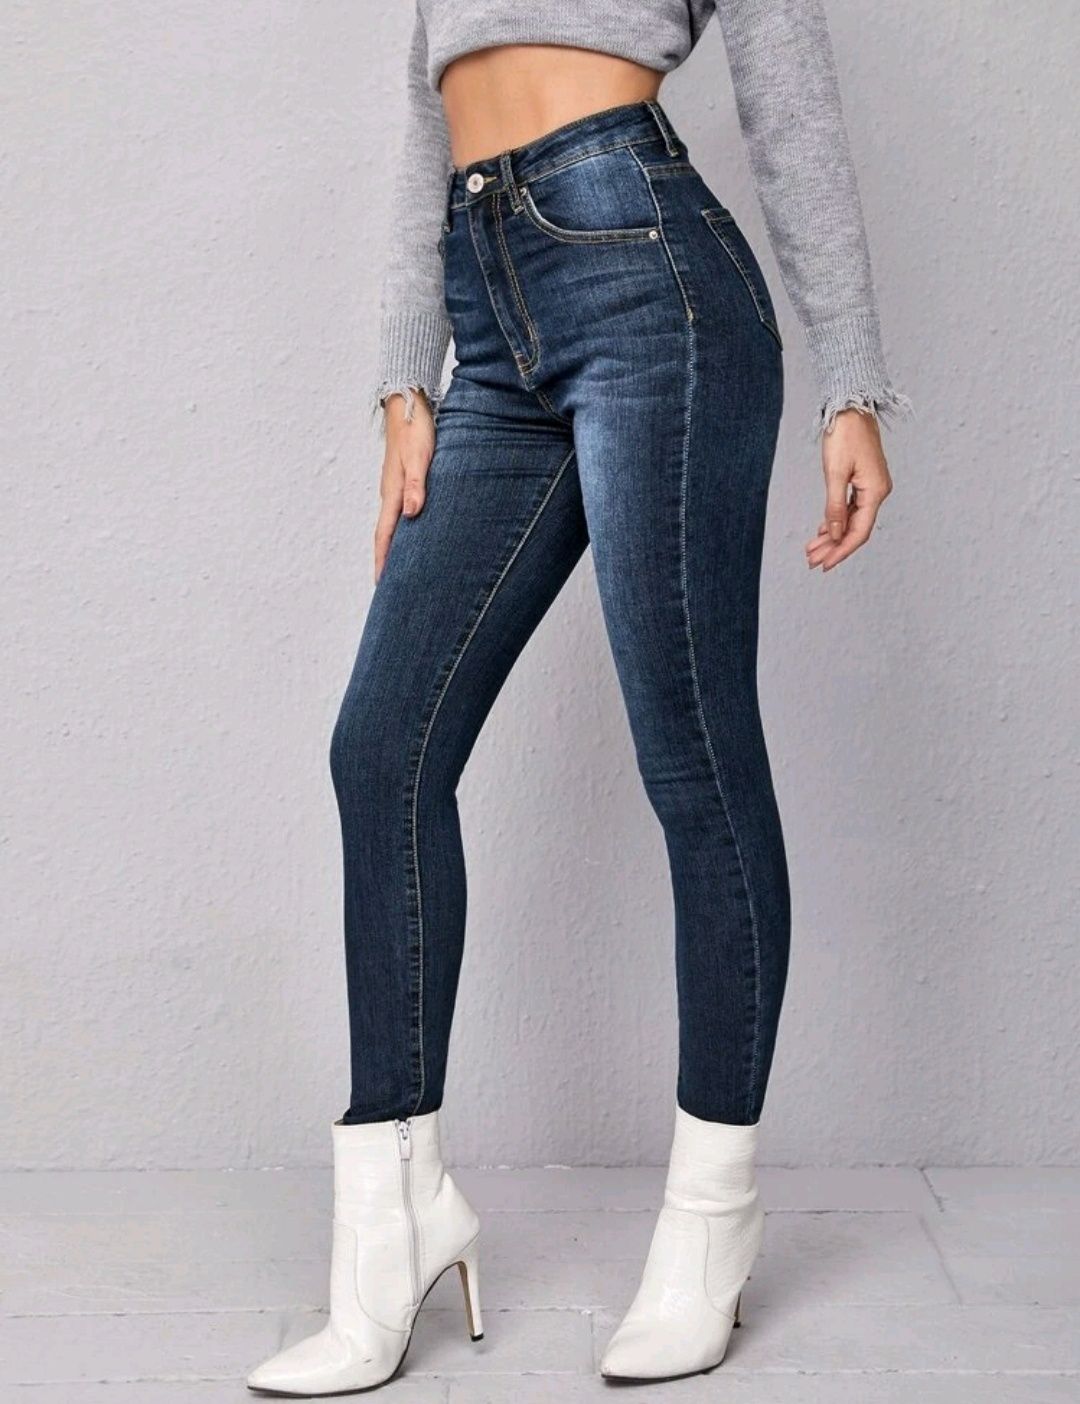 Jeans Skinny Shein